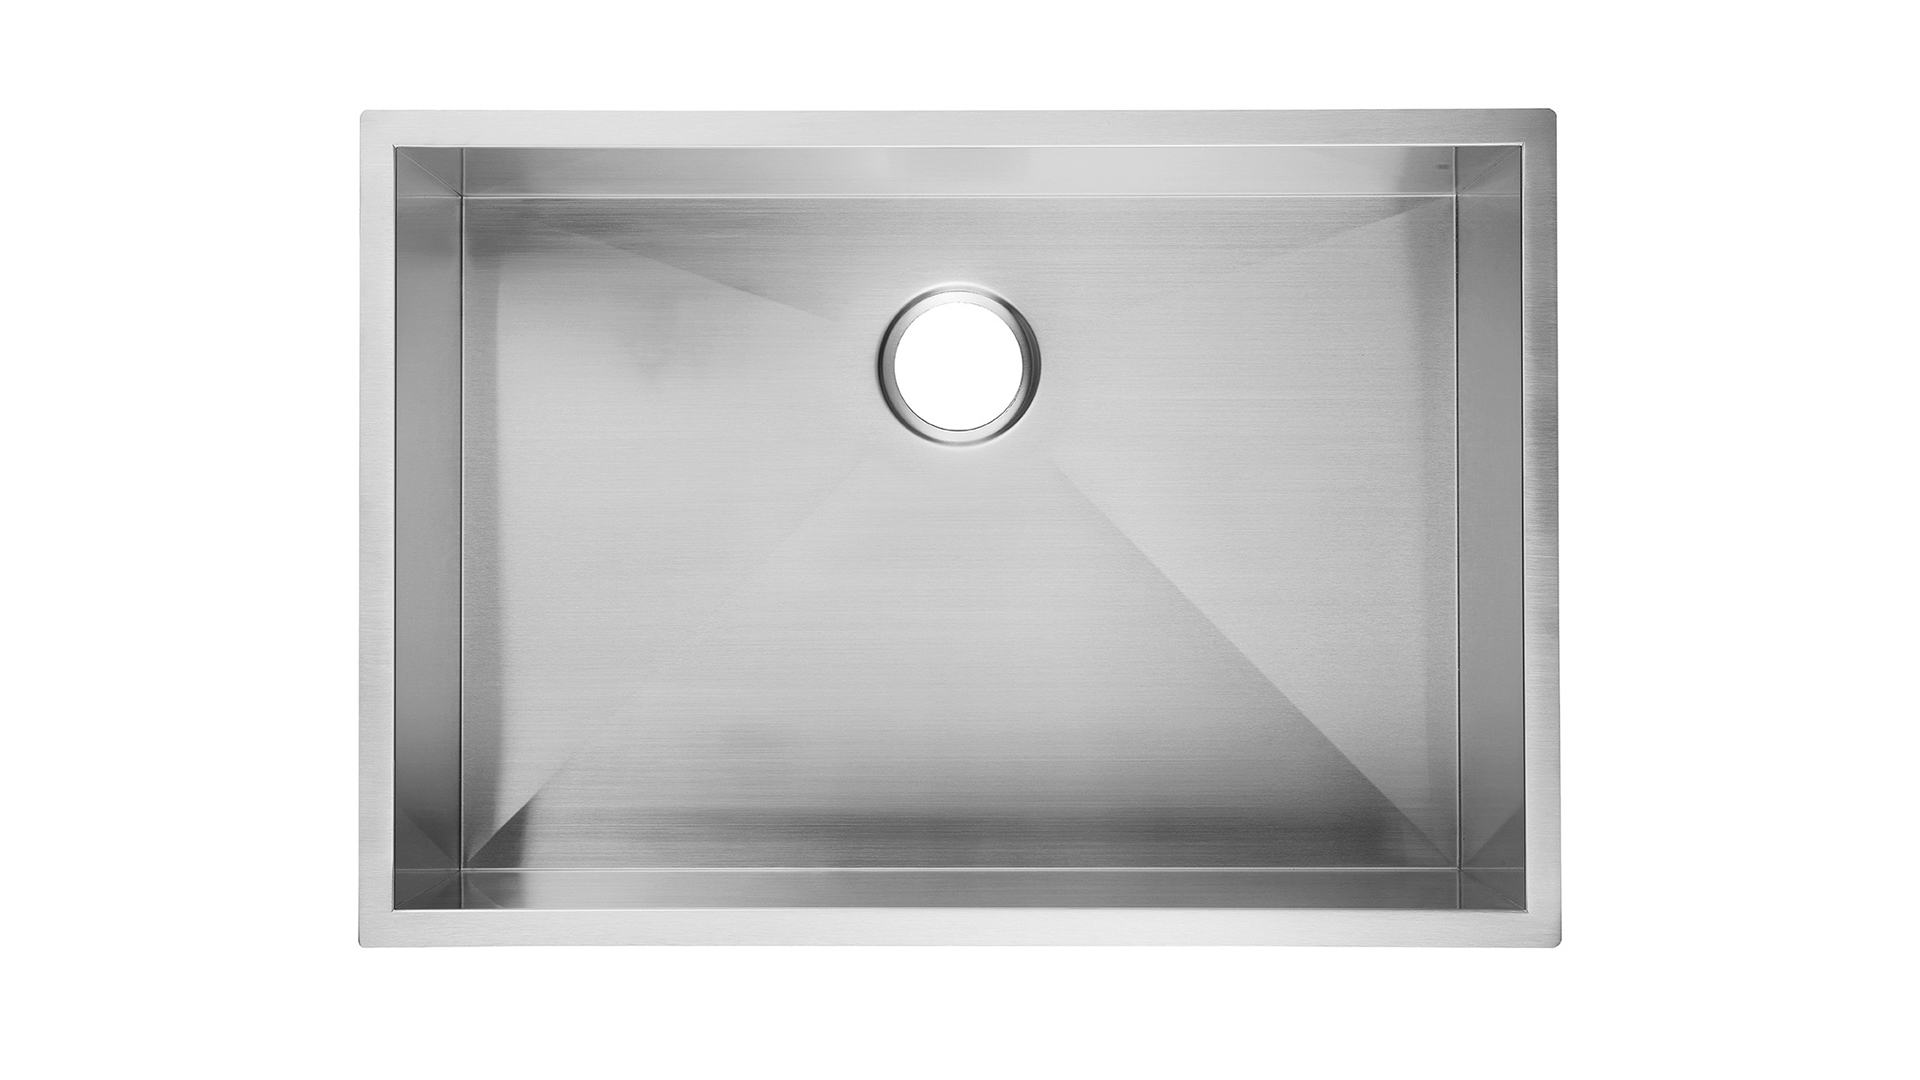 23 inch Undermount Kitchen Sink Stainless Steel 9 inch deep, Aquacubic Undermount Kitchen Sink